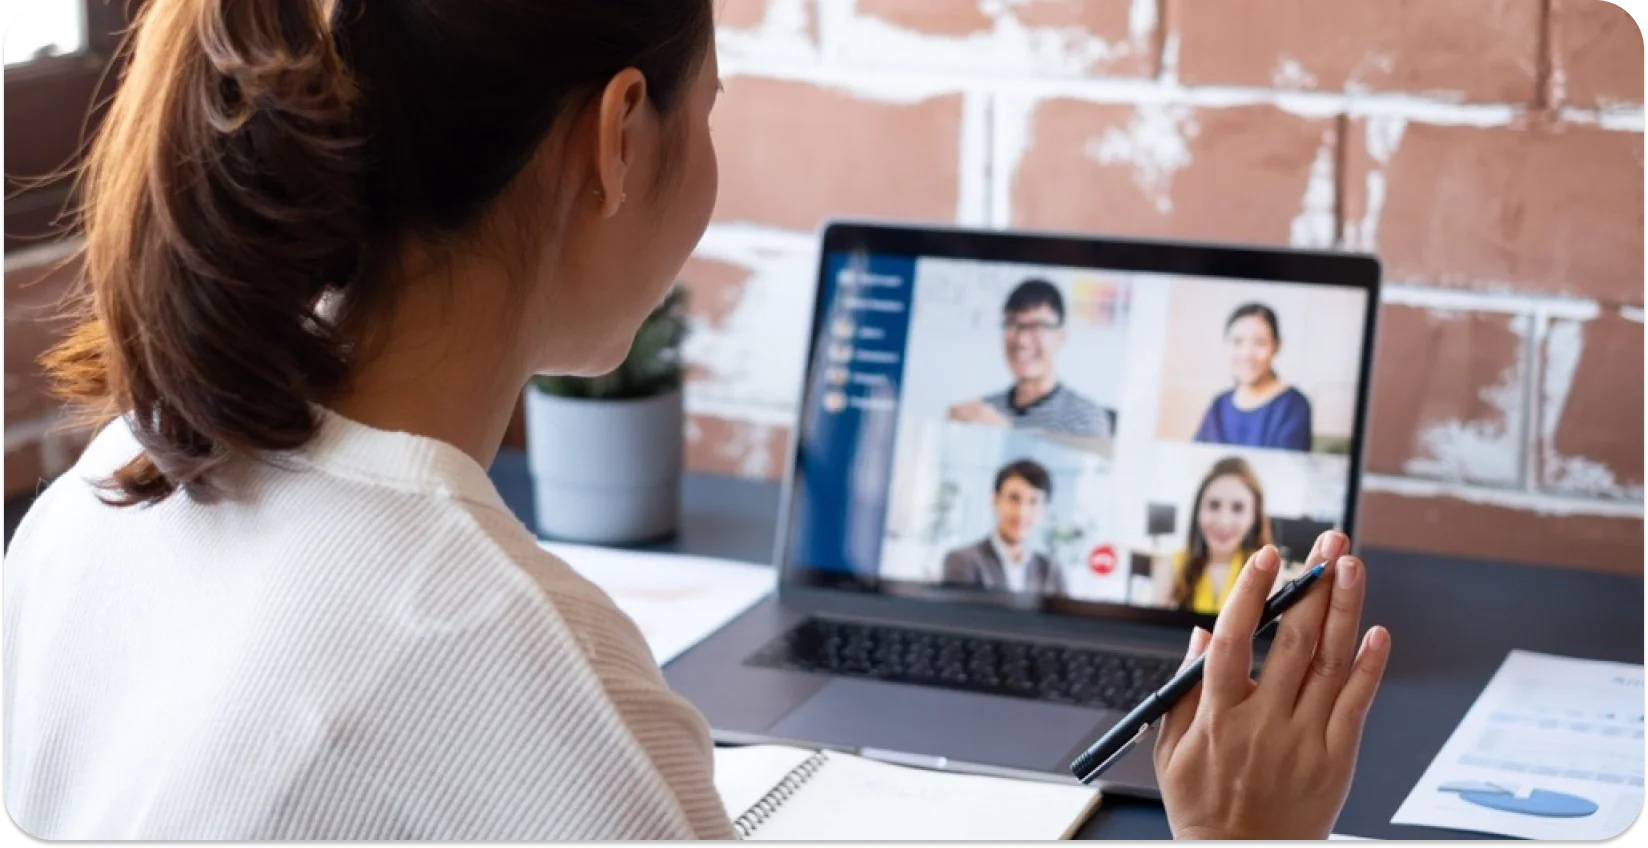 Profissional engajado em uma reunião virtual com colegas na tela de um laptop.